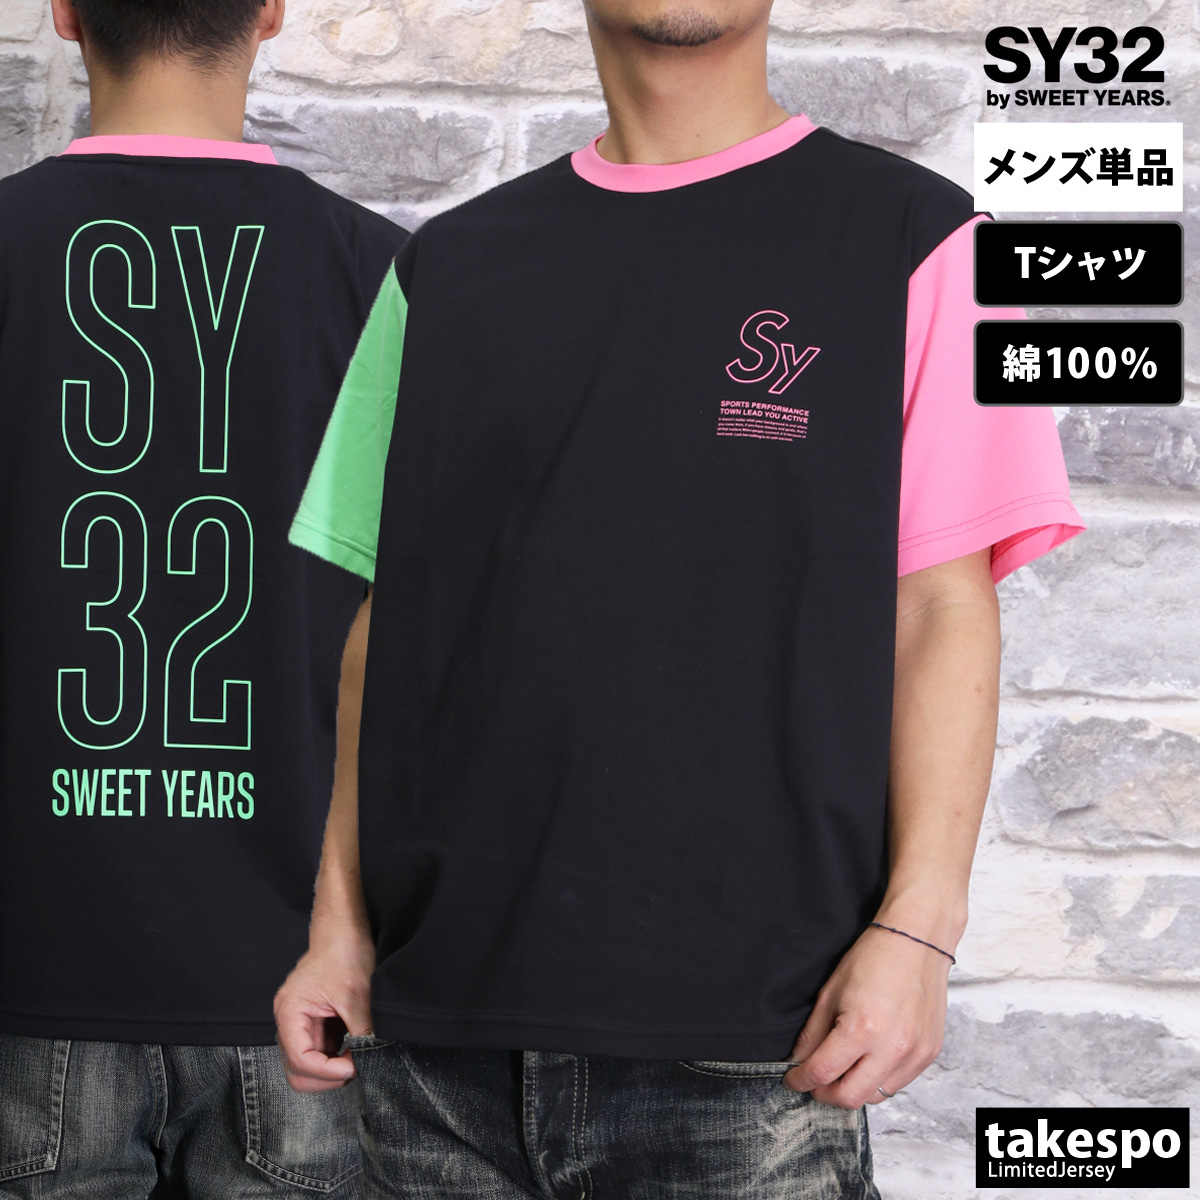 スウィートイヤーズ Tシャツ メンズ 上 SY32 by SWEET YEARS 半袖 コットン バ...